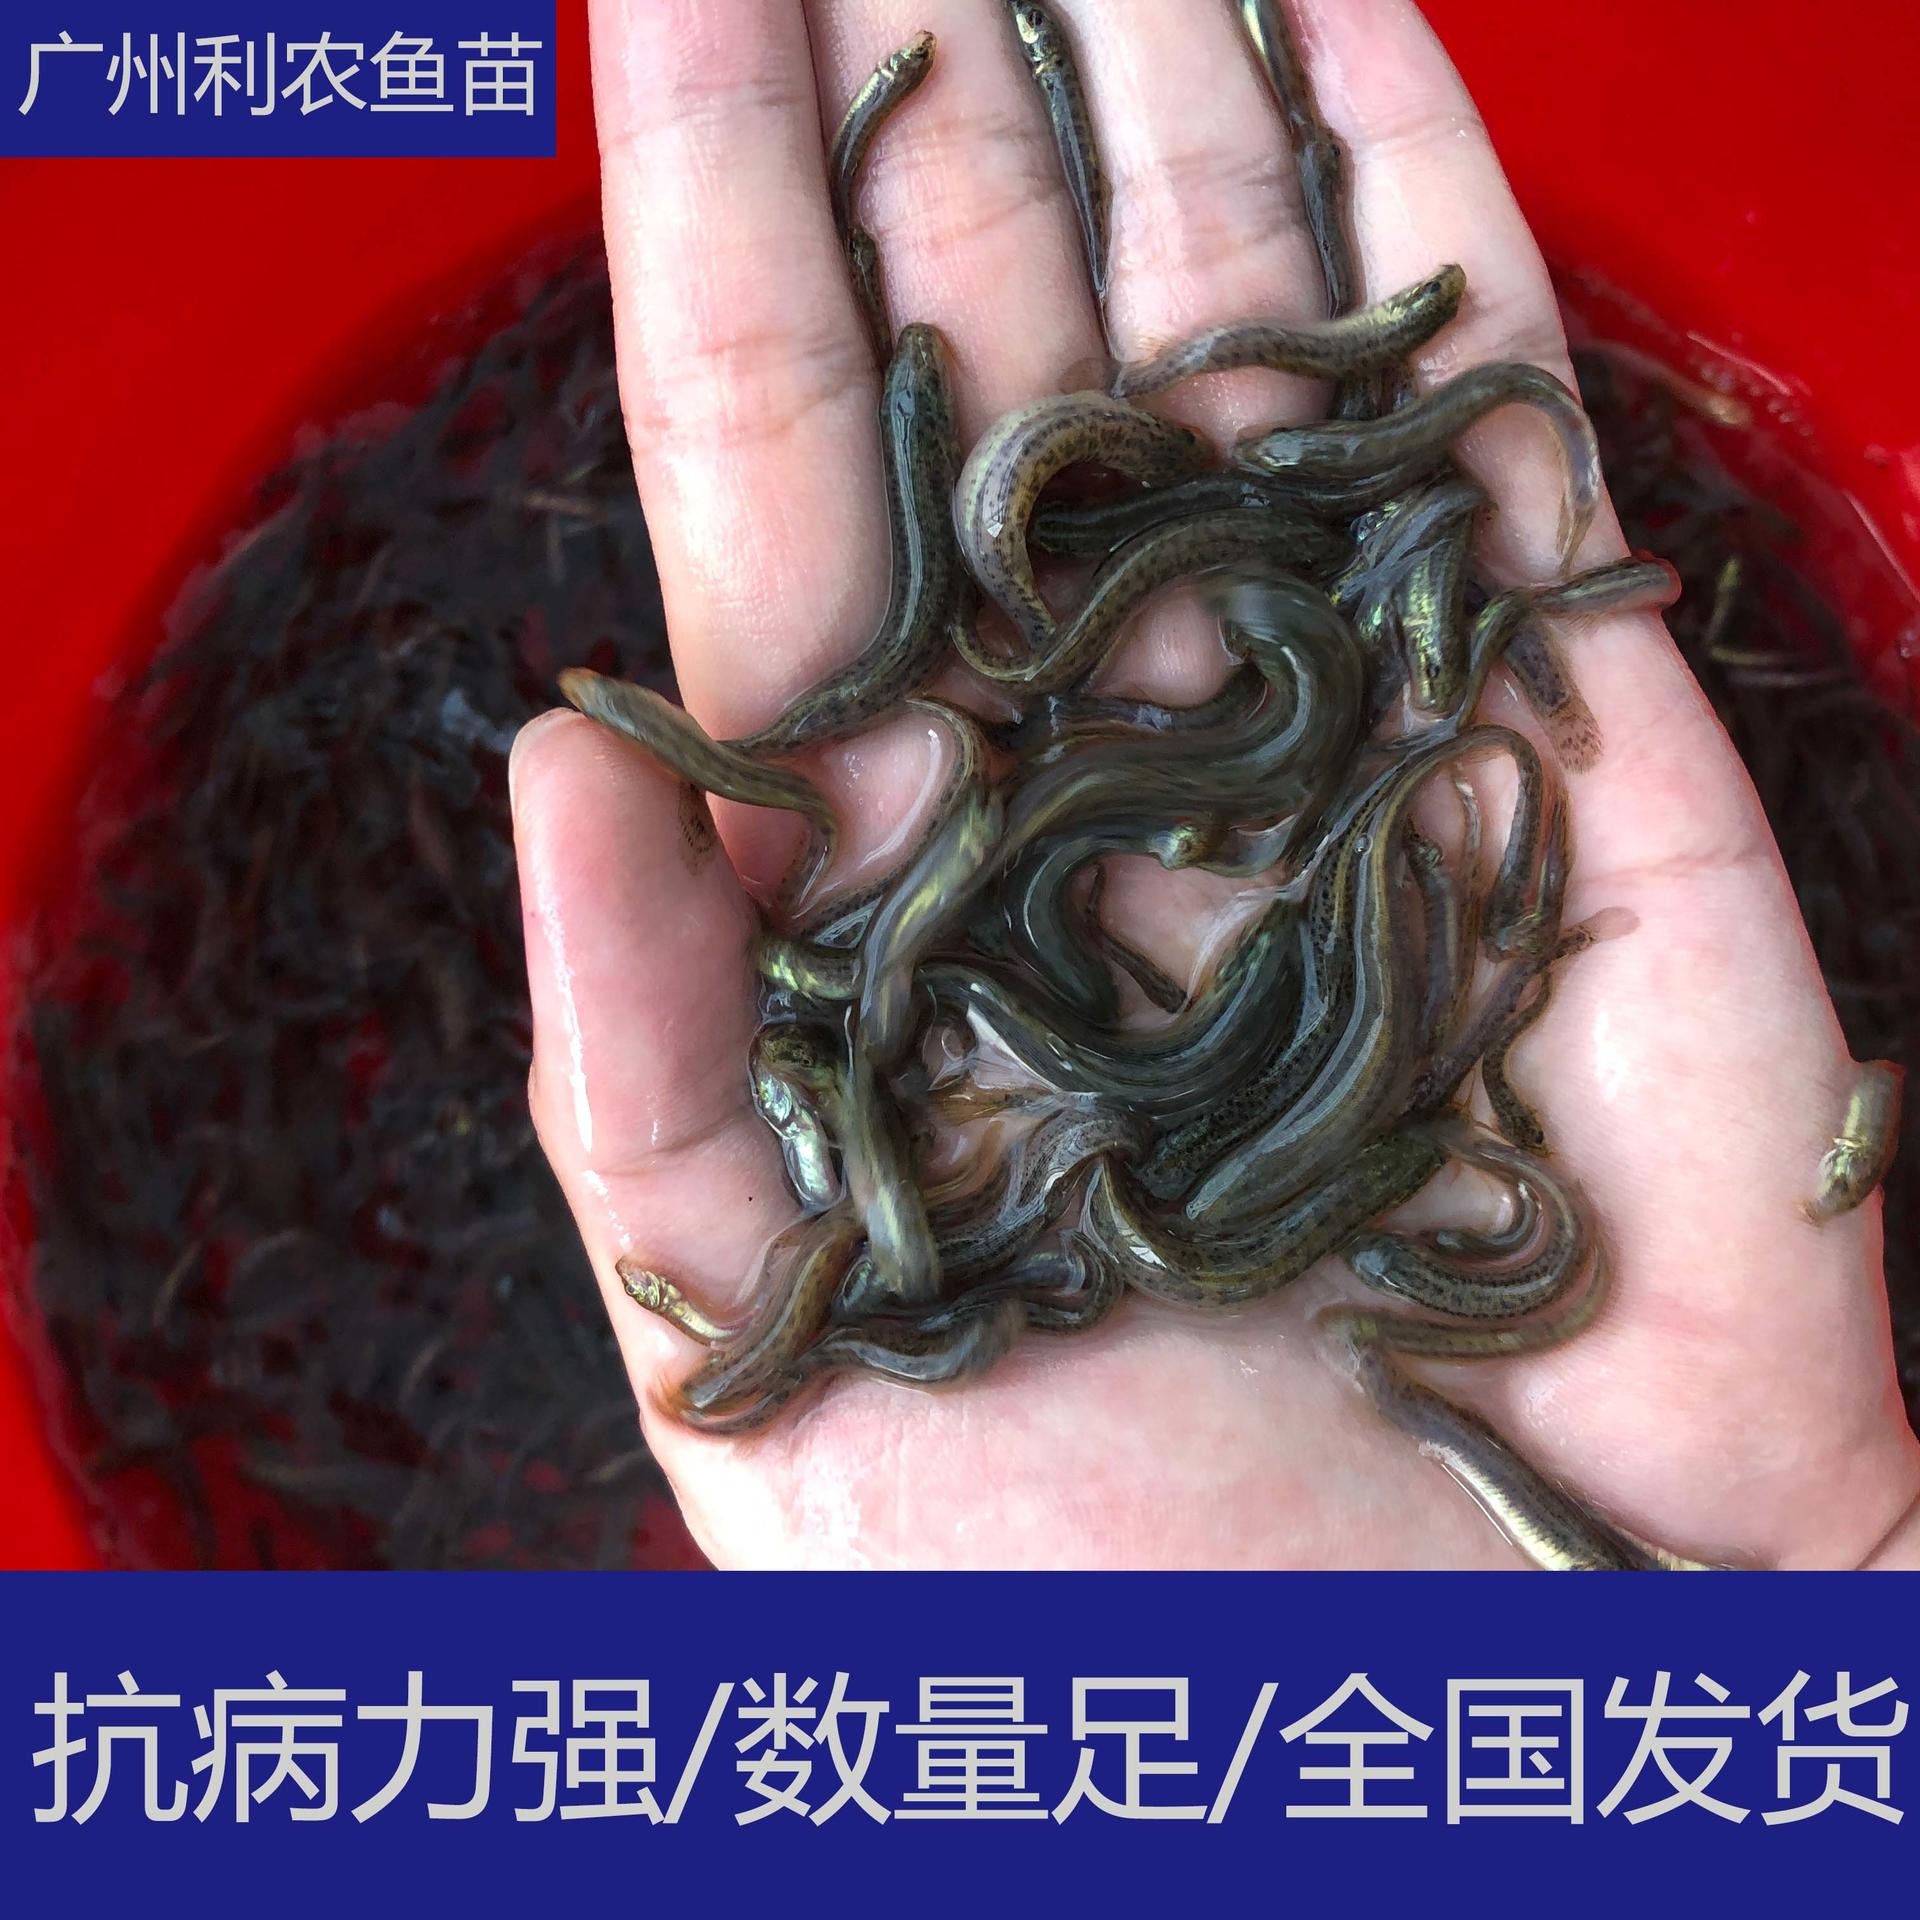 大量批发 江西宜春台湾泥鳅苗出售 3-4cm泥鳅鱼苗养殖场